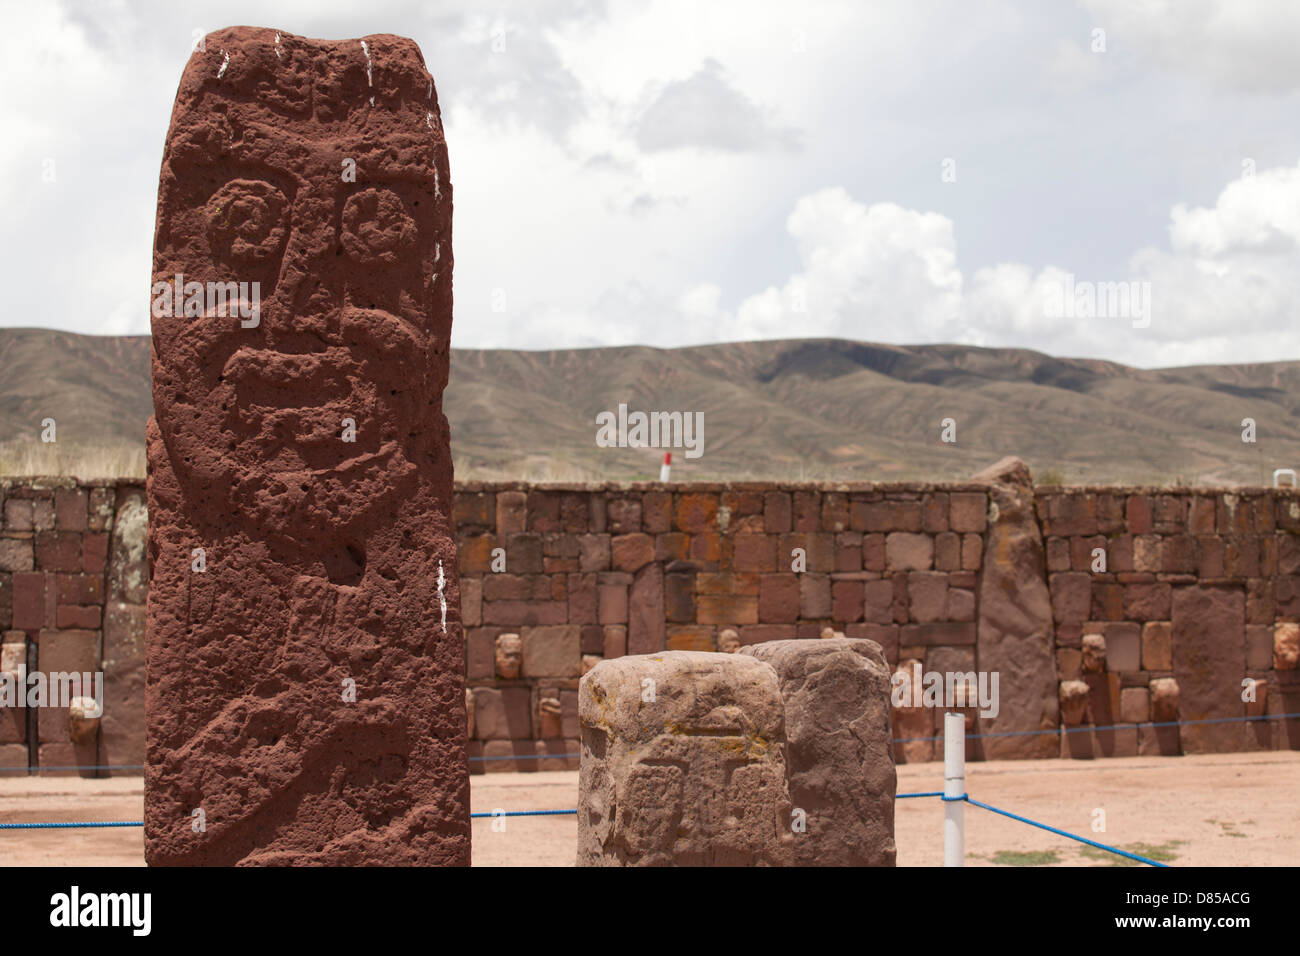 La ville historique de la culture Tiwanaku dans les hautes terres boliviennes Banque D'Images